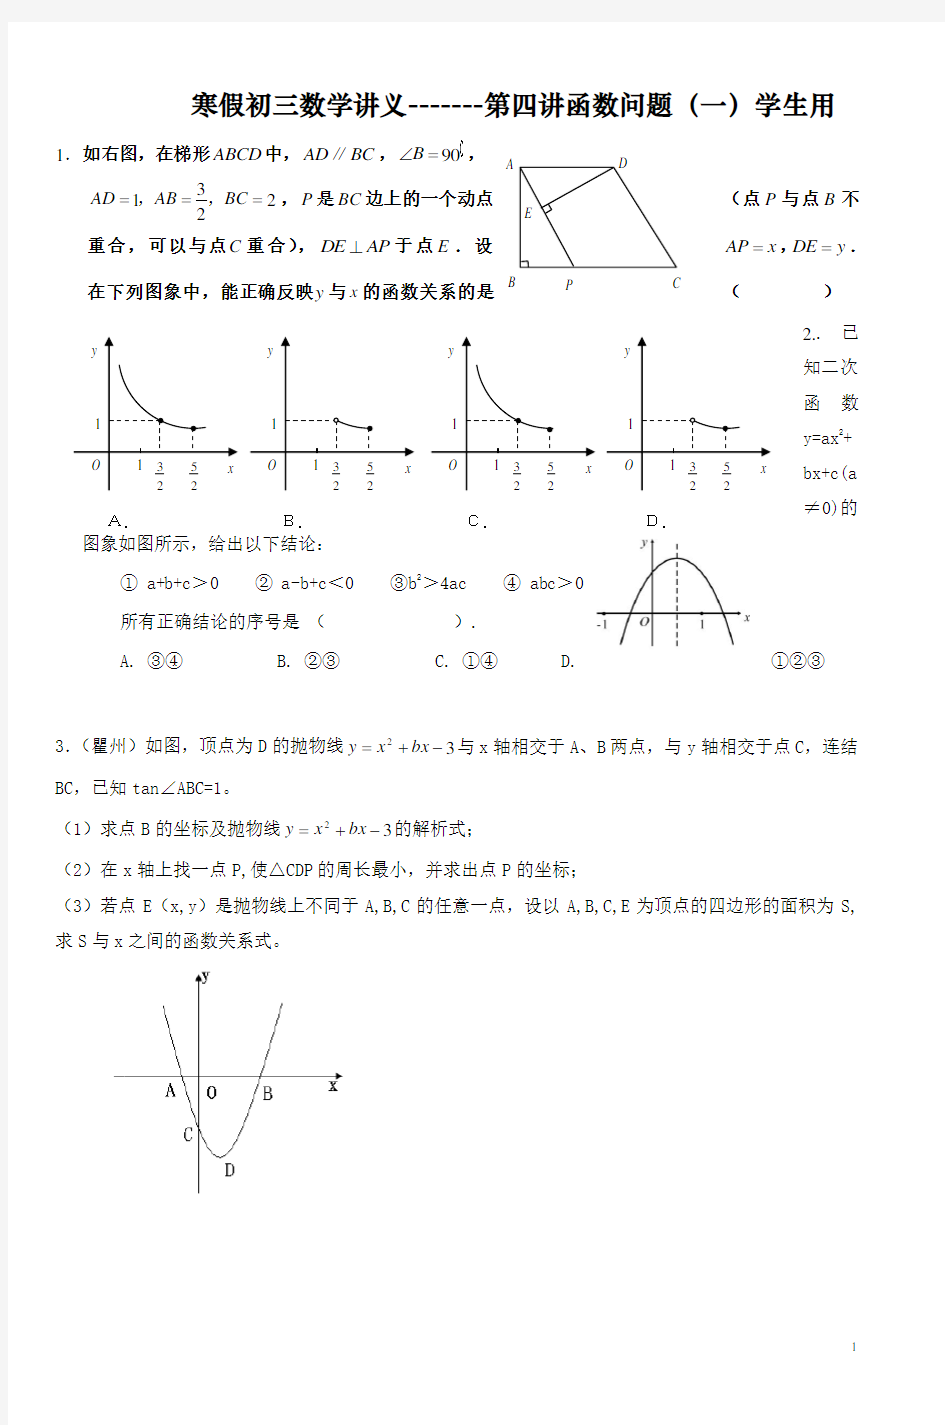 寒假初三数学讲义第四讲-函数问题 资料( 一 )